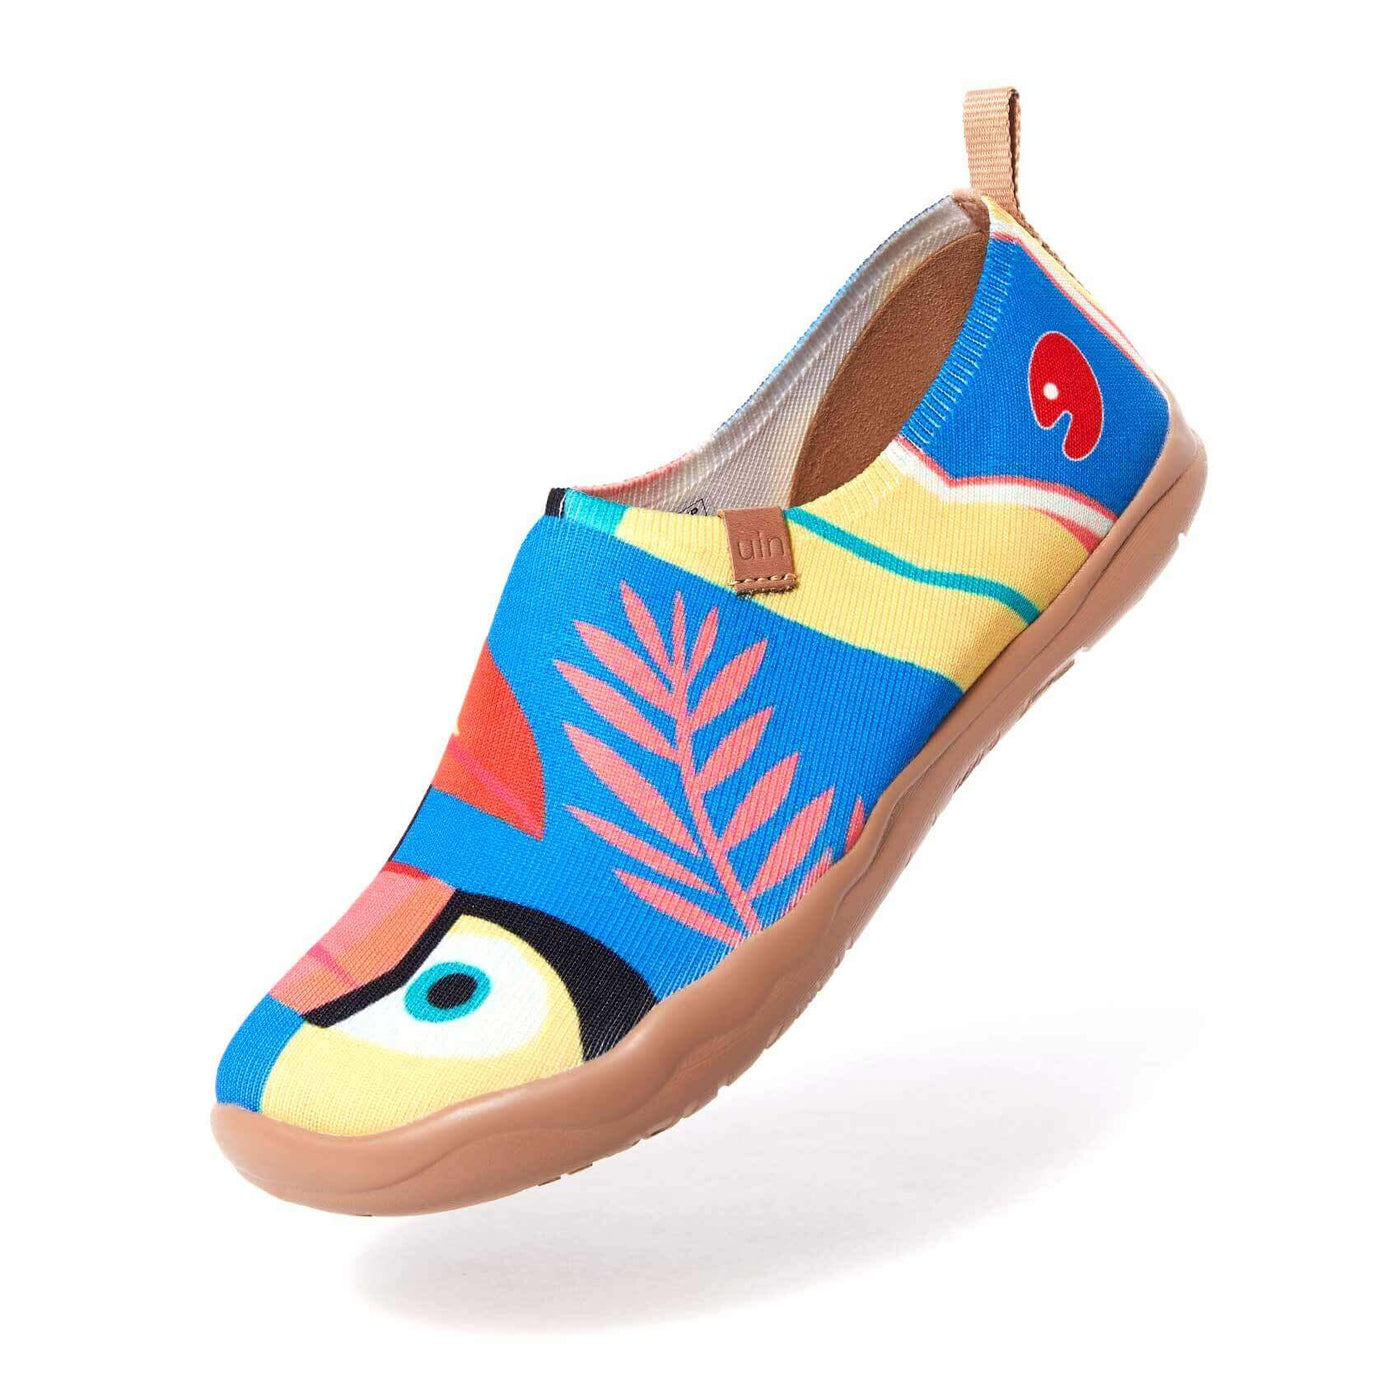 UIN Footwear Women Toucan Canvas loafers